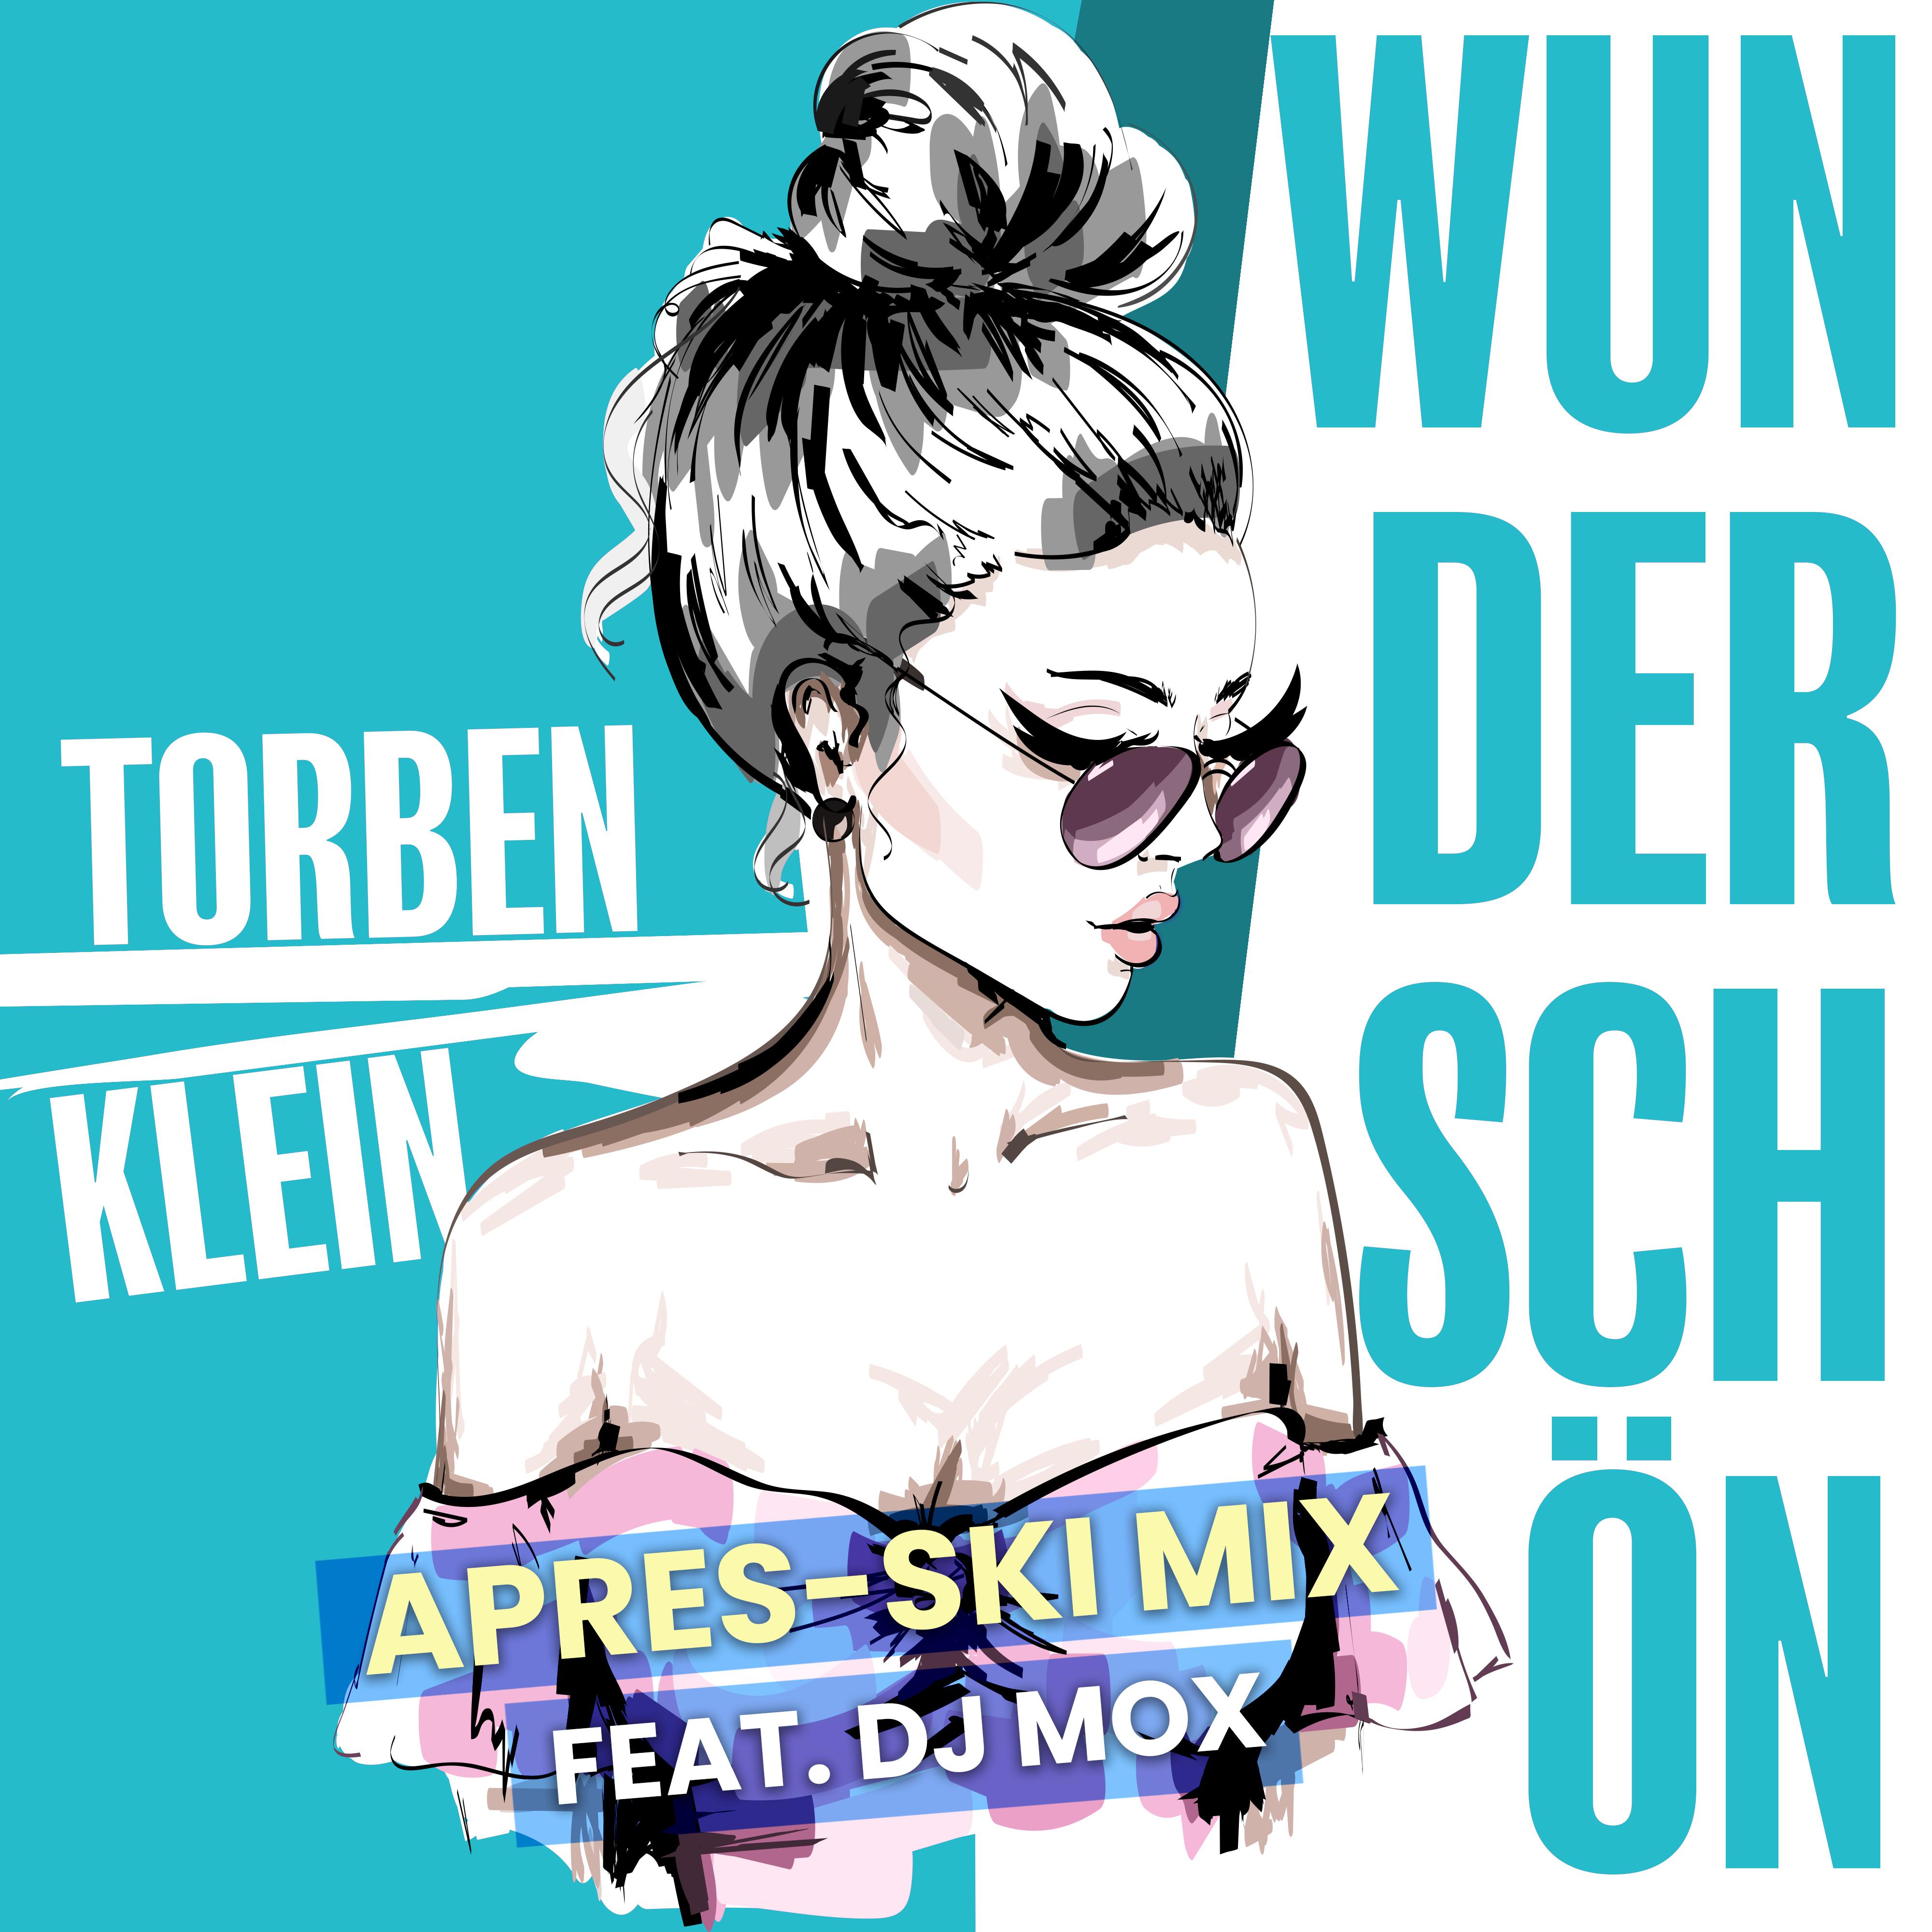 Torben Klein - Wunderschön (Après Ski Remix)